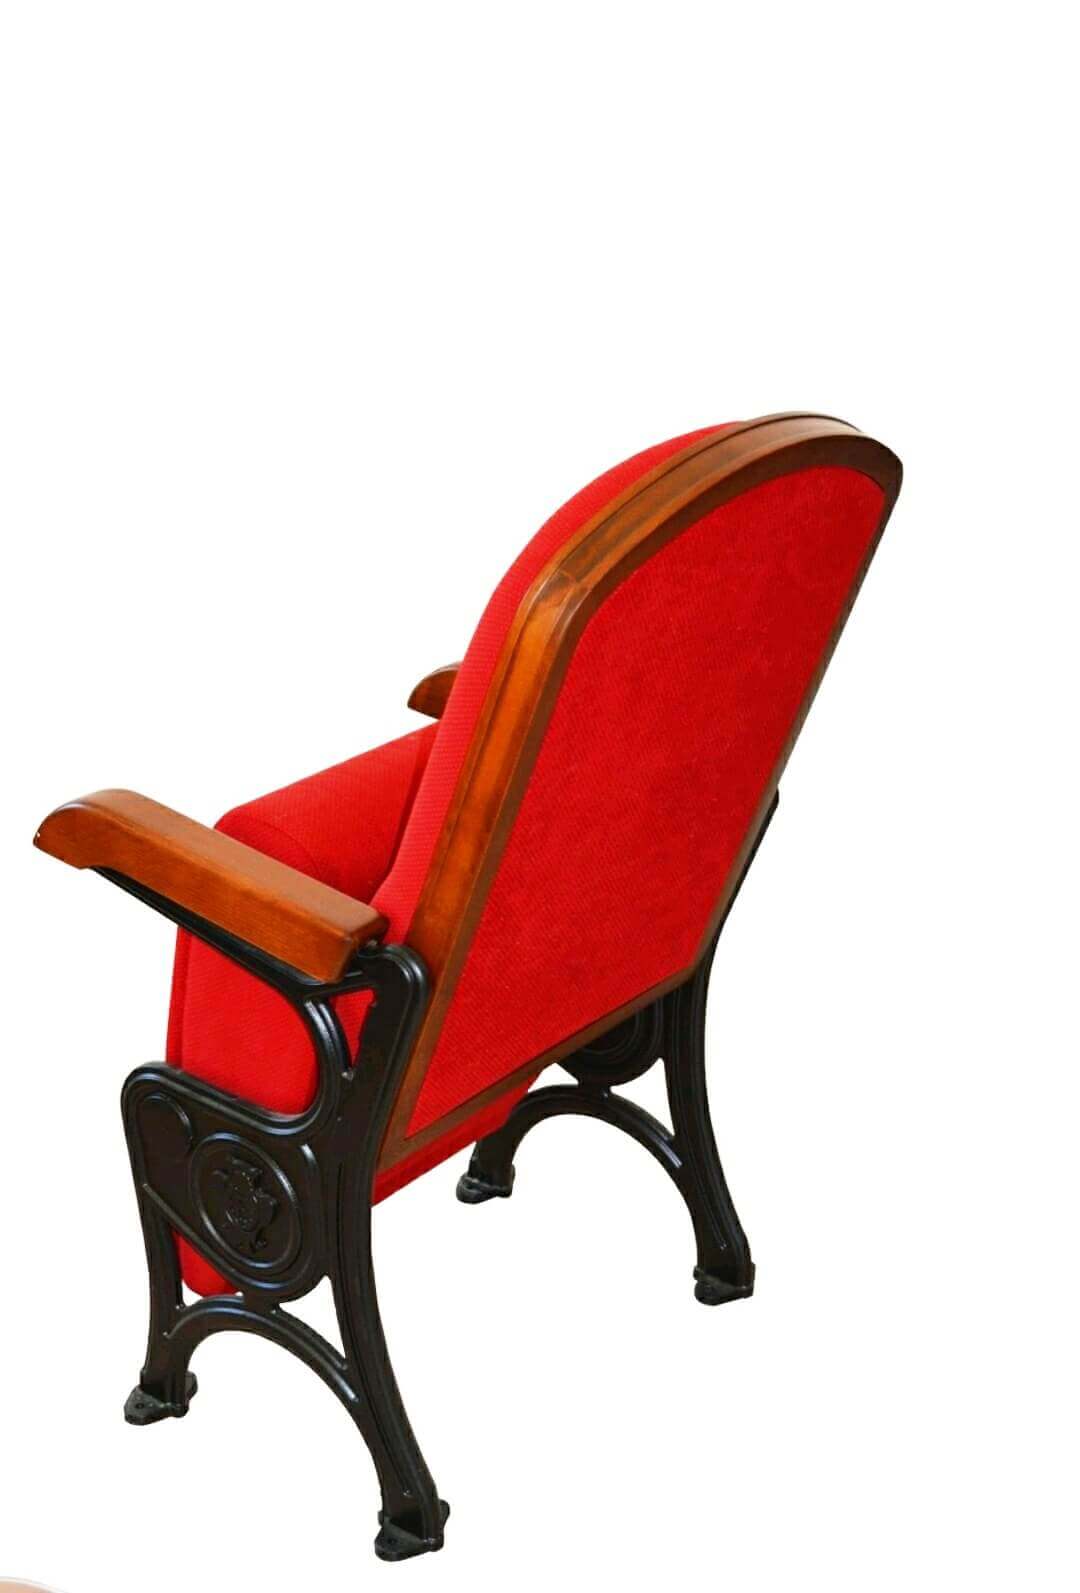 Гнутоклееные каркасы для стульев и кресел